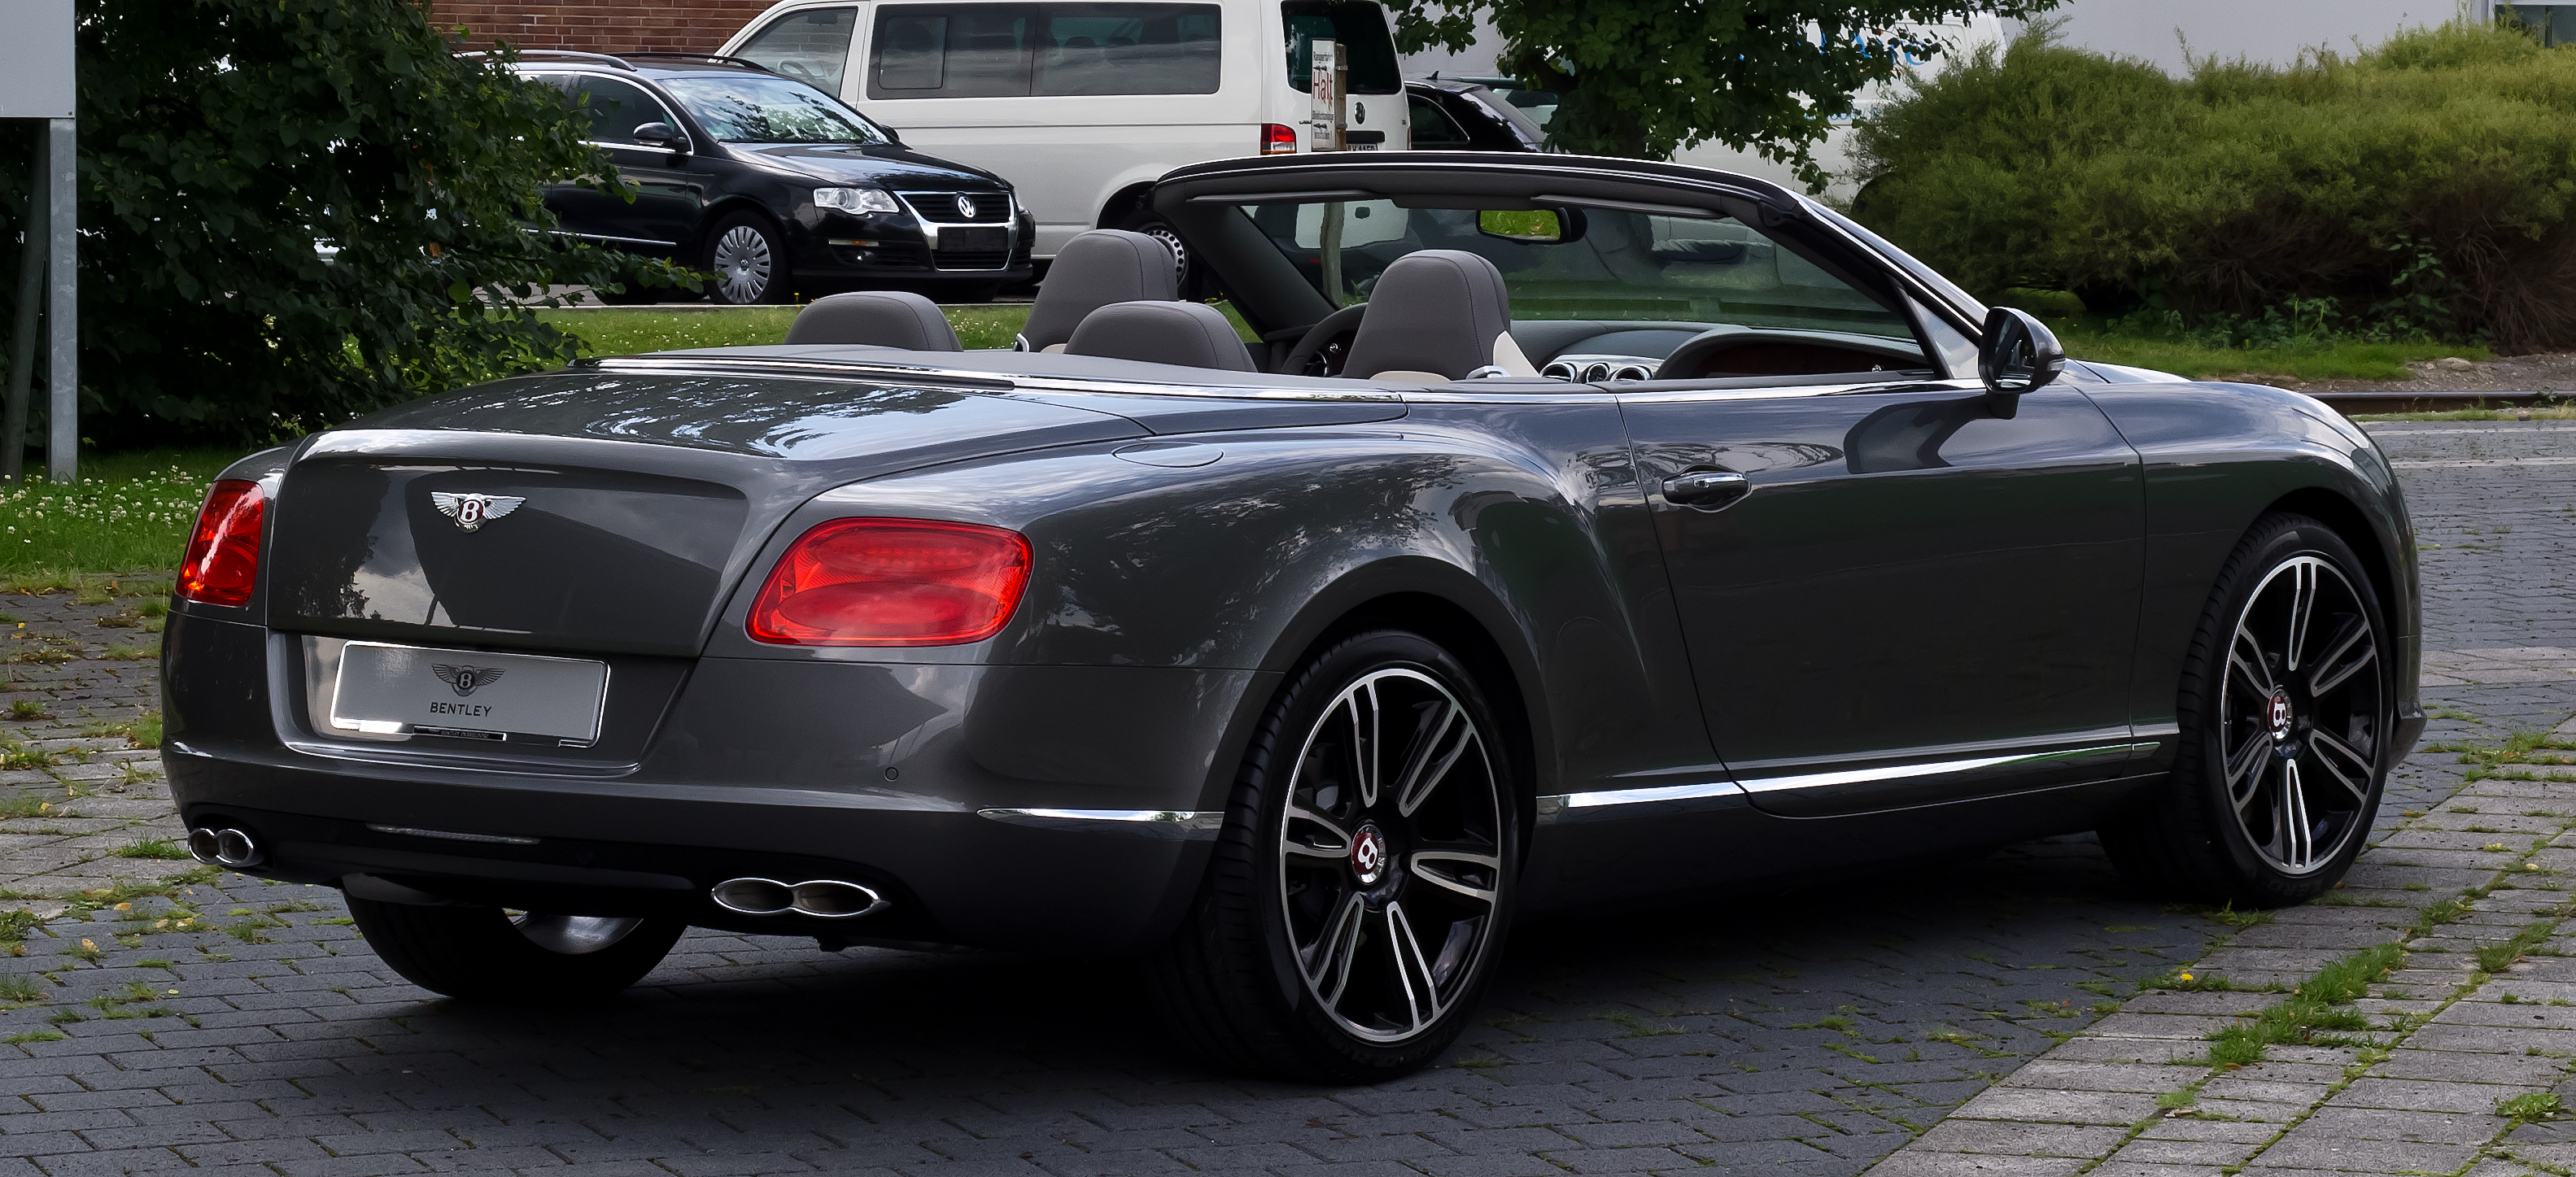 Bentley View V8